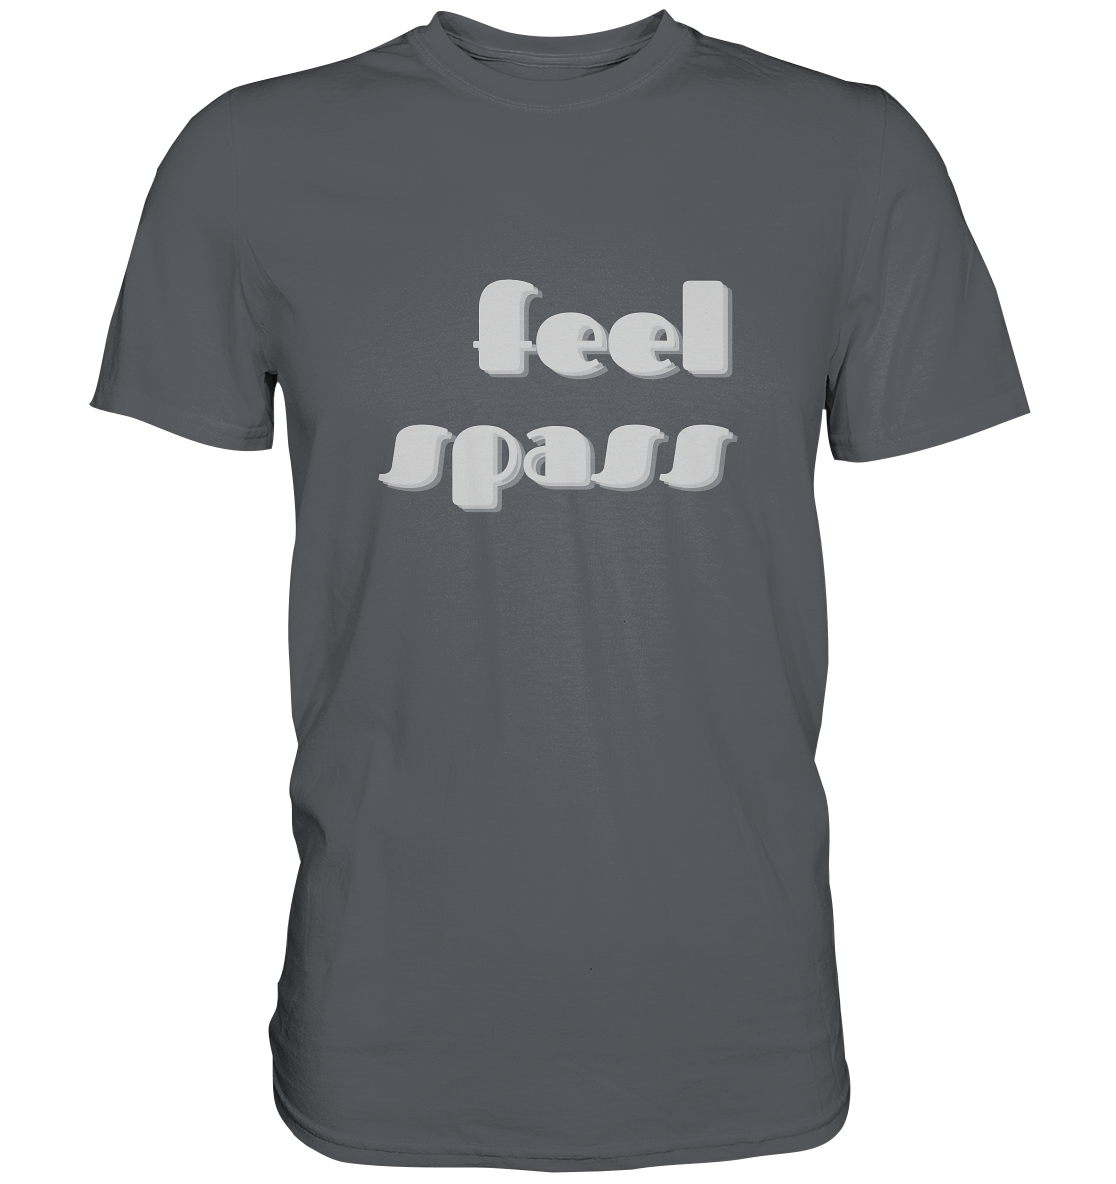 T-Shirt Herren, Rundhals, mit Aufdruck "Feel Spass", grau